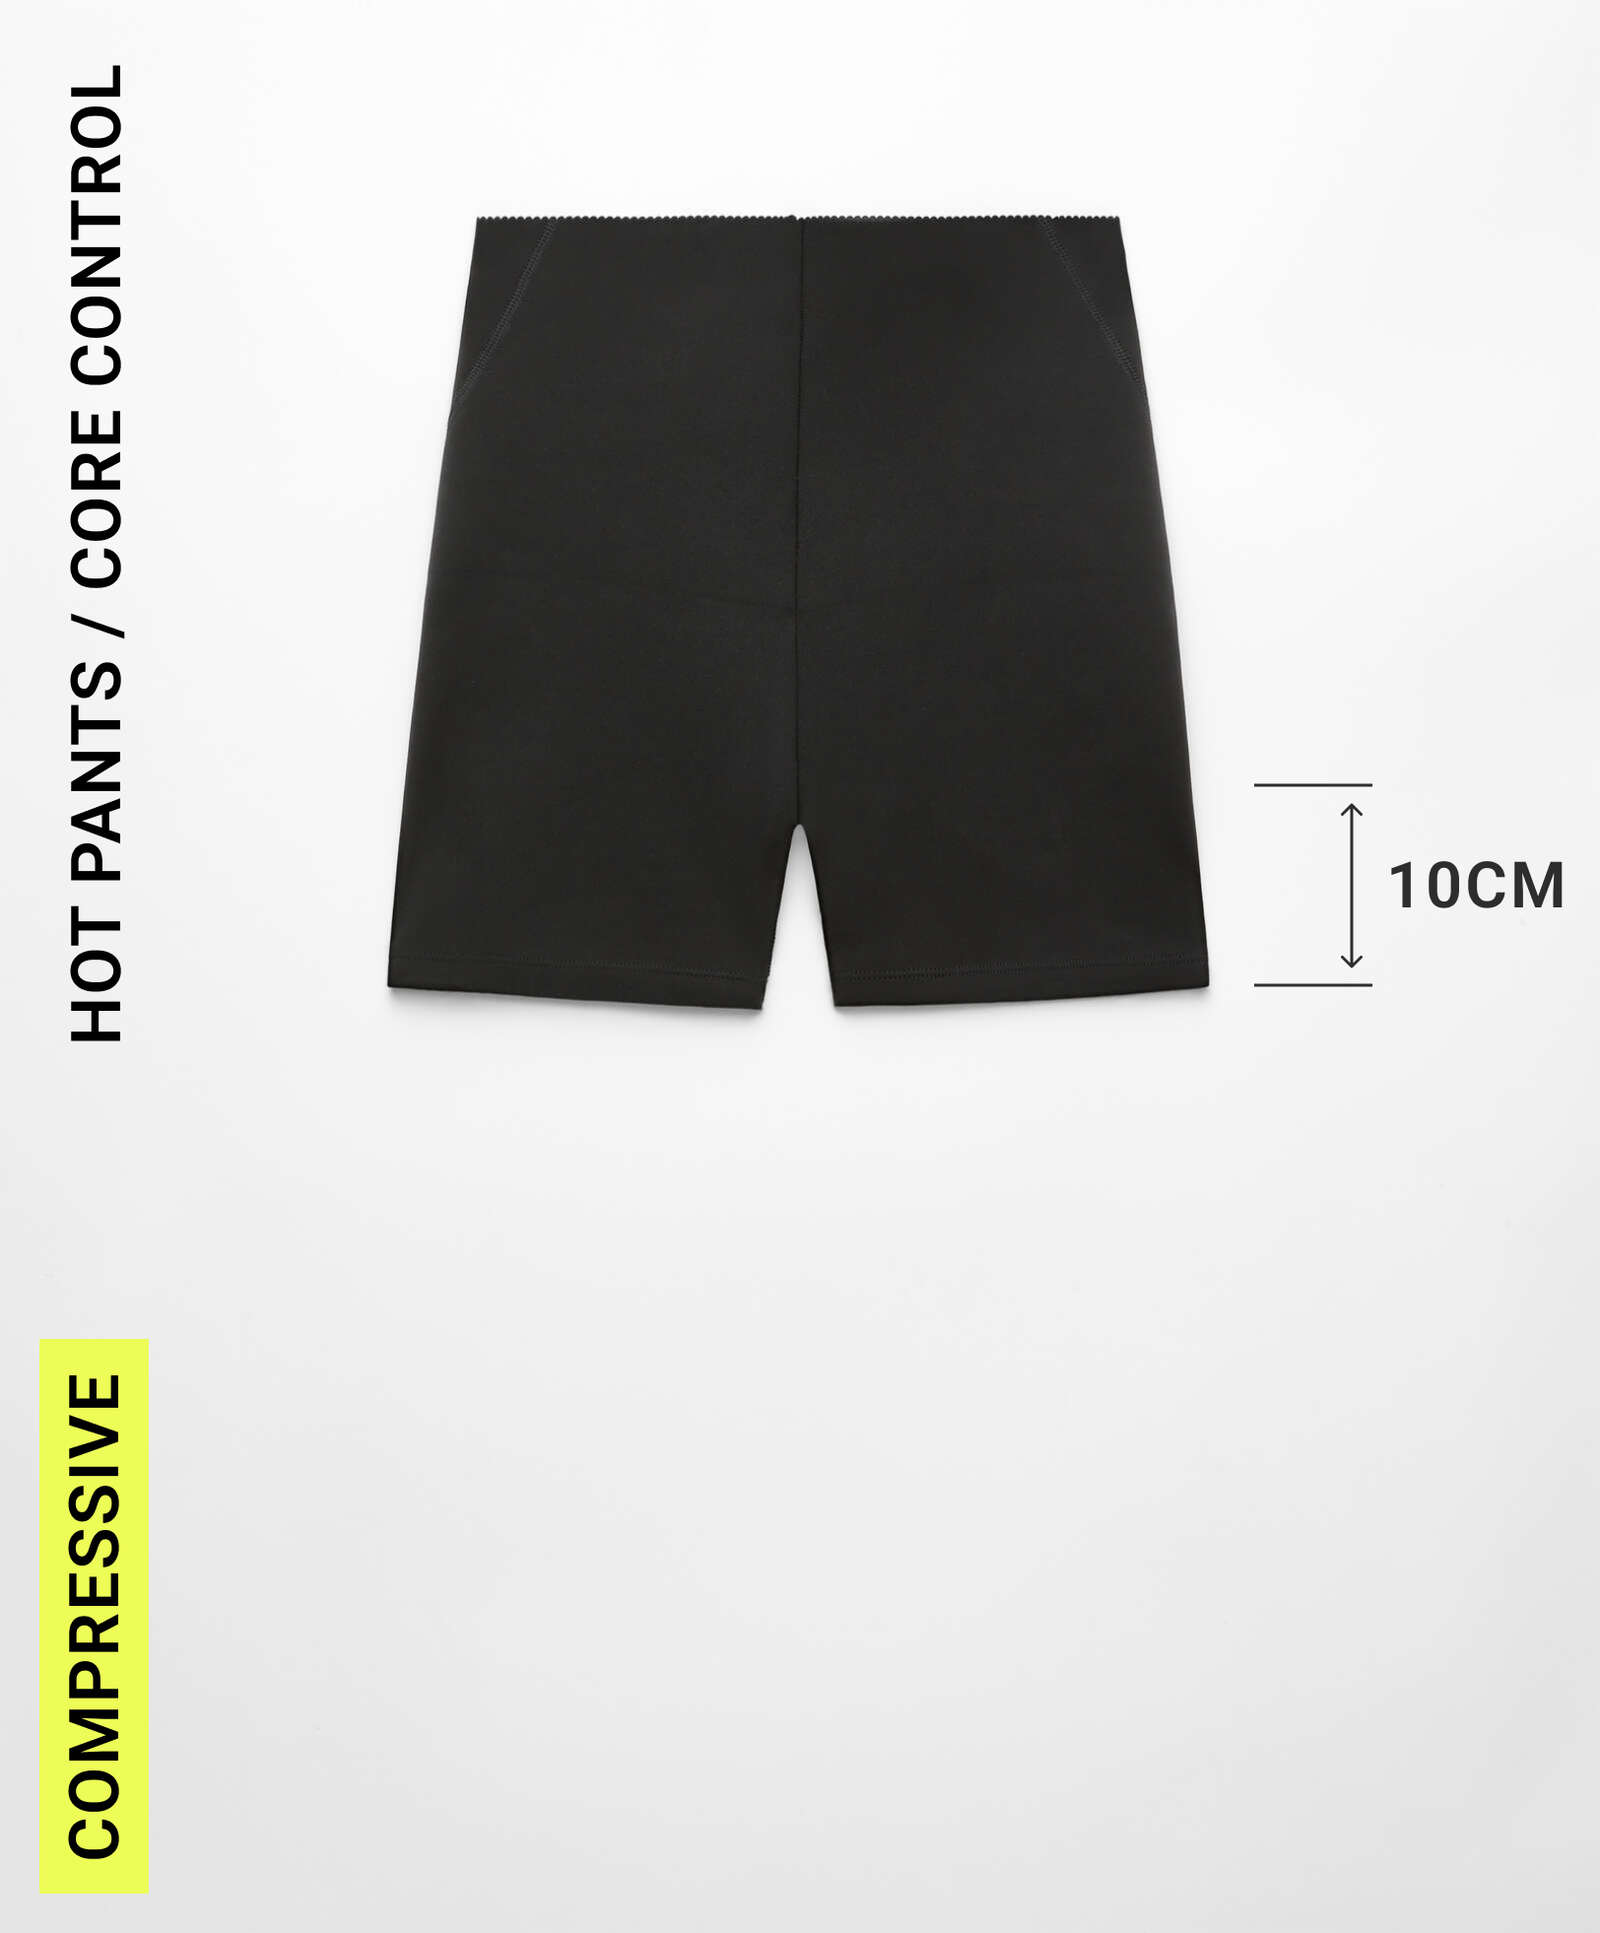 Hot pants, compressive core control, 10 cm